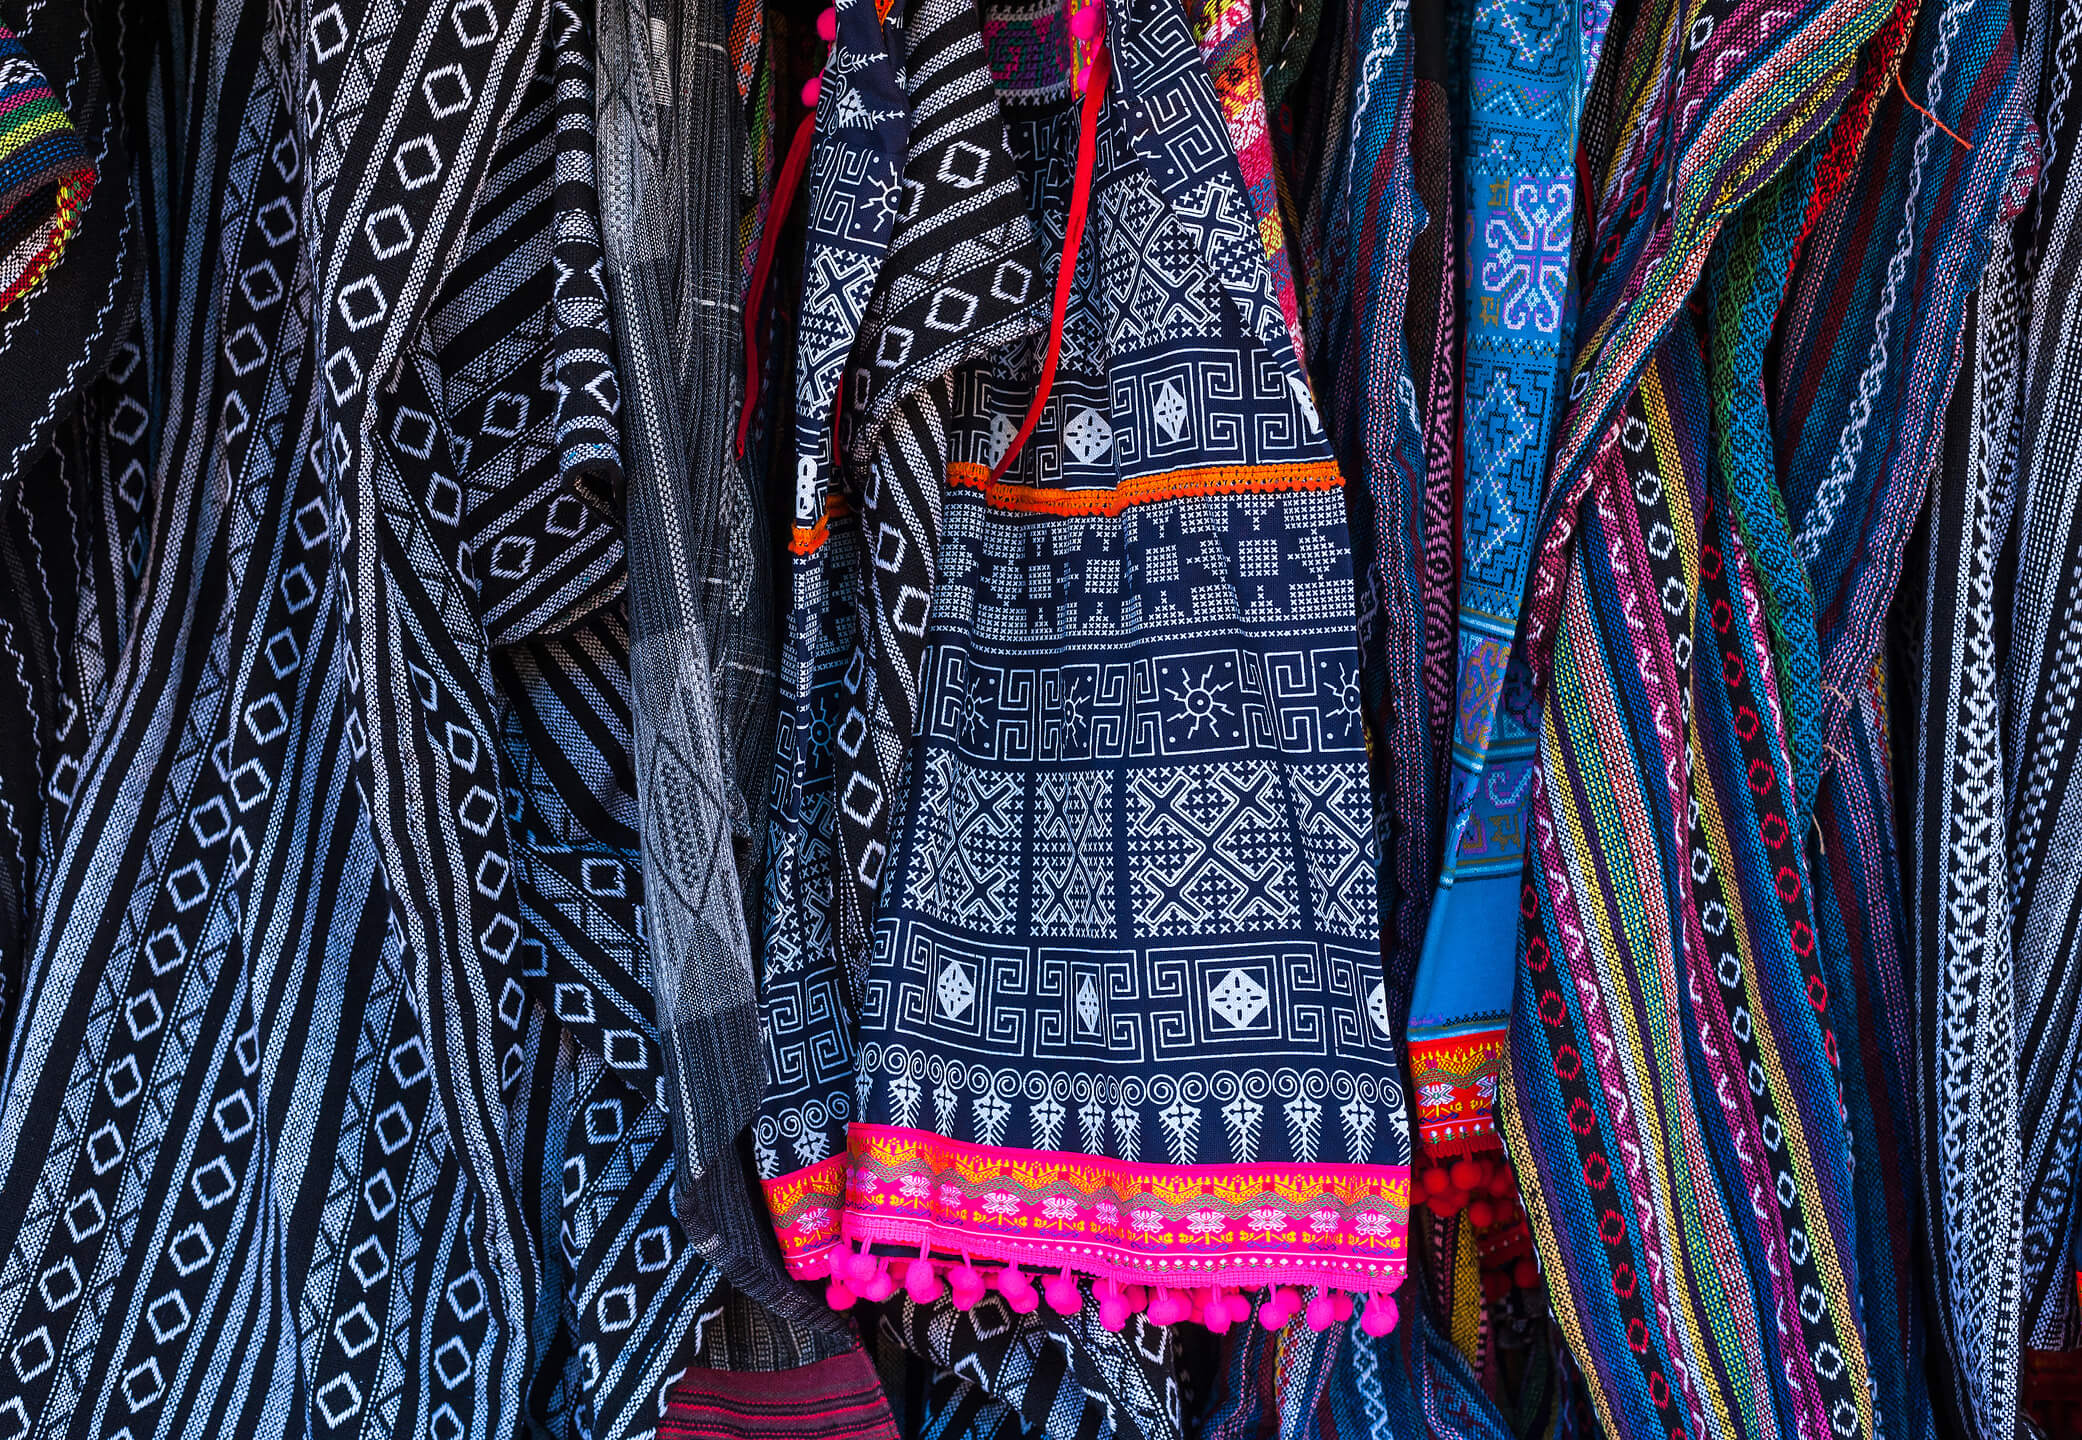 Hmong fabric pattern